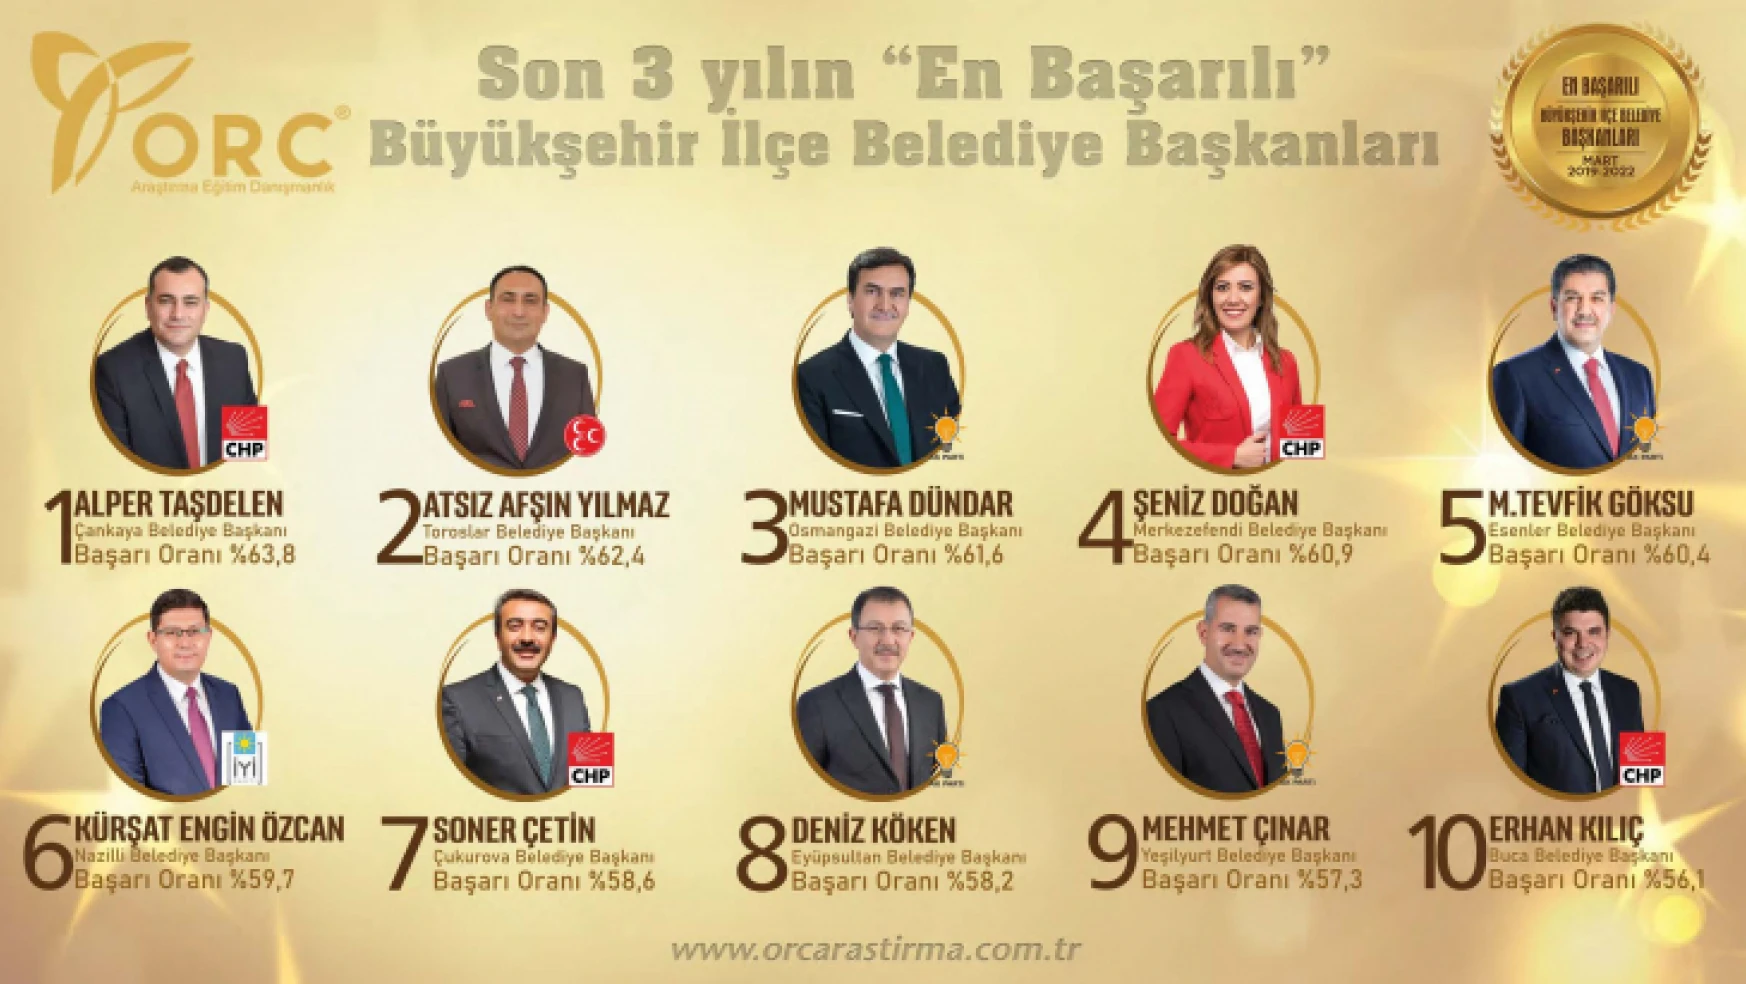 Başkan Özcan 'en başarılı' belediye başkanı listesinde